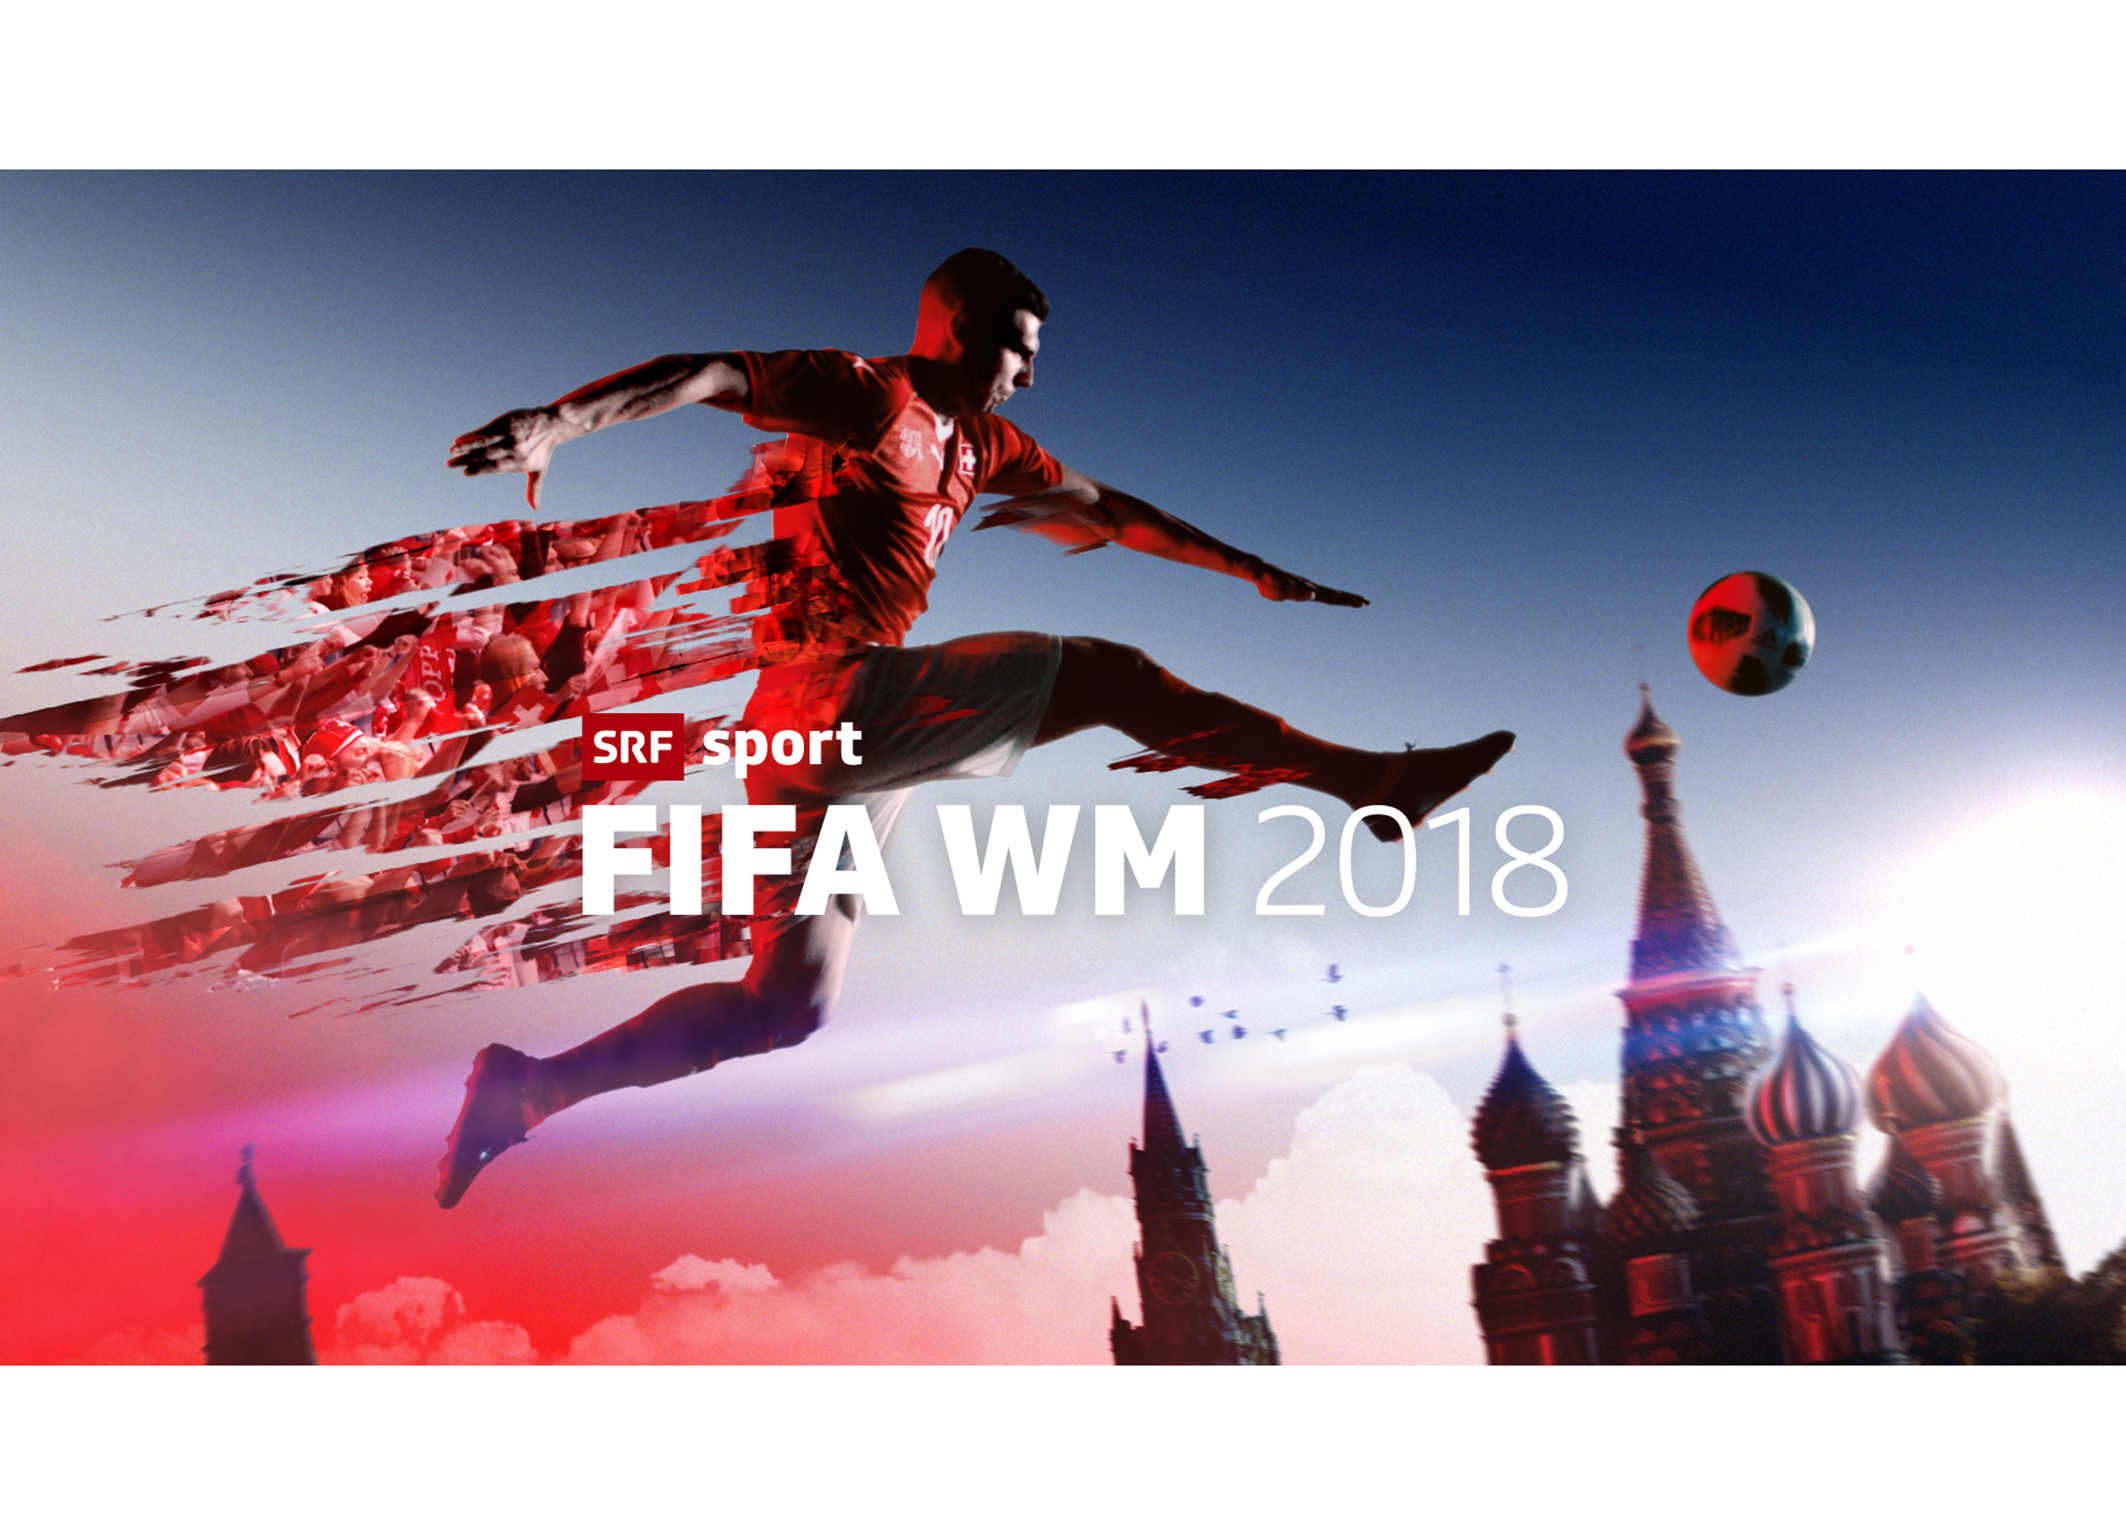 Neun von zehn Fussballfans schauten die FIFA WM 2018 auf SRF zwei - Medienportal